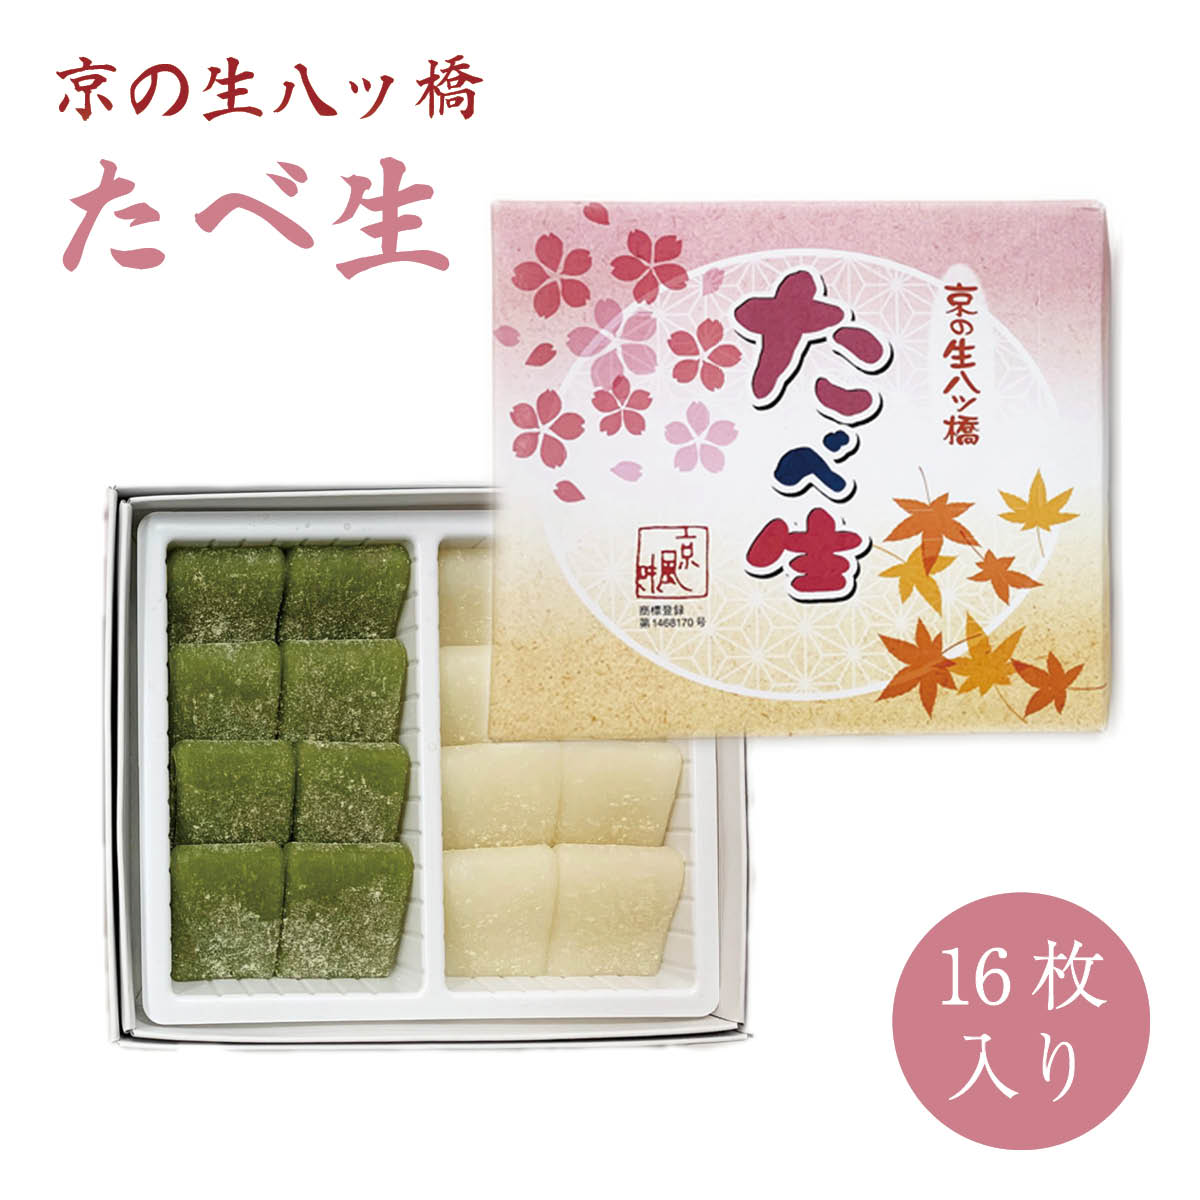 ネット通販で買える、京都のお土産お菓子のおすすめは？